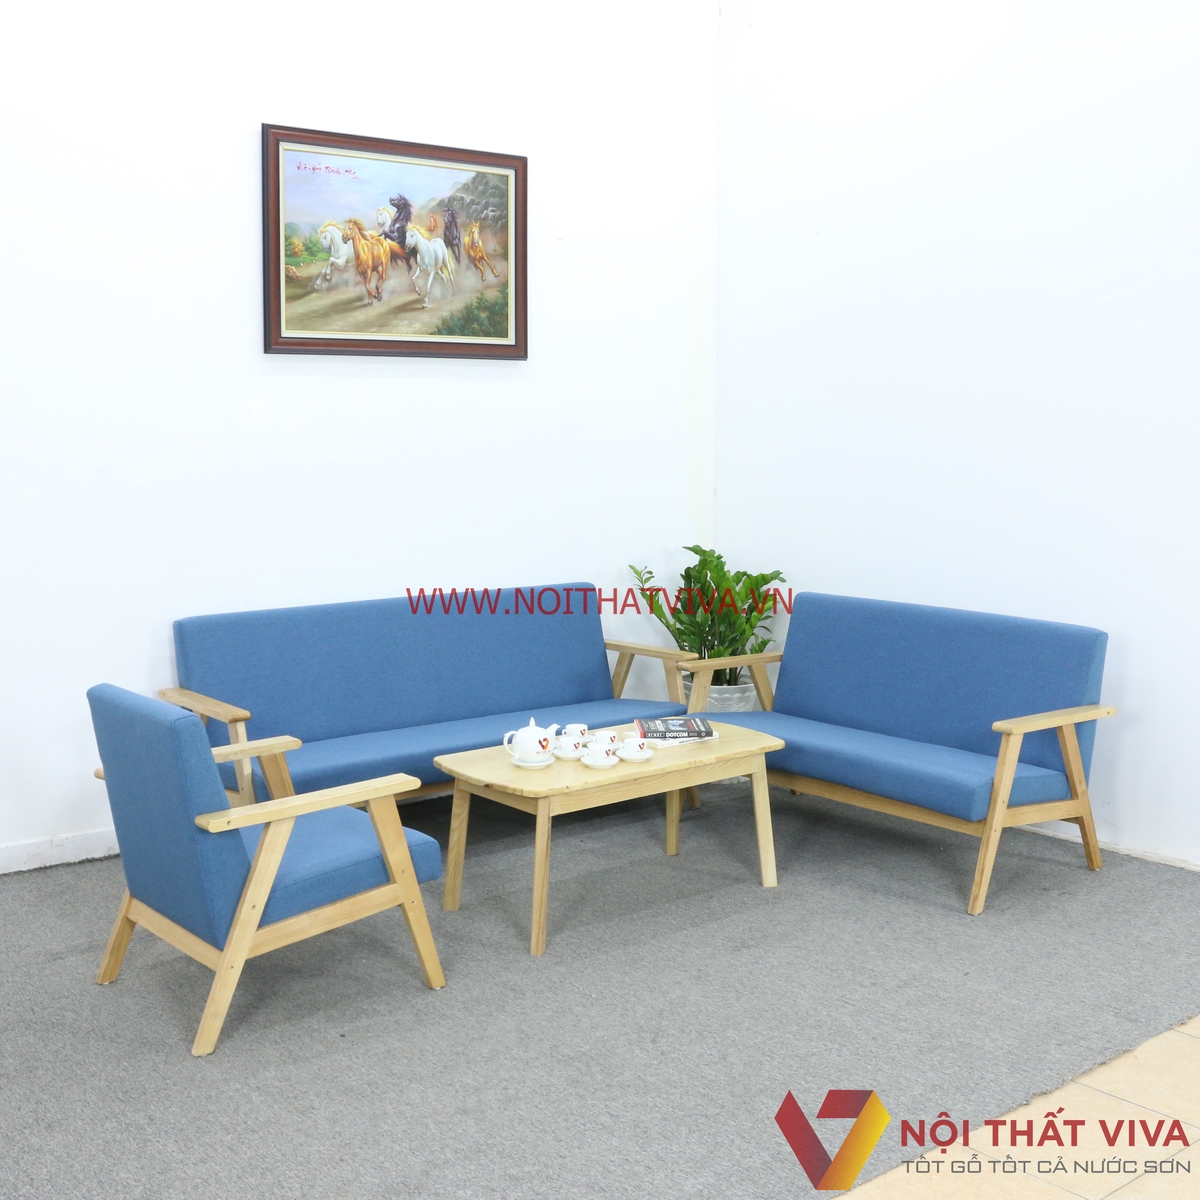 Bàn ghế gỗ phòng khách là một sự lựa chọn tuyệt vời cho những ai yêu thích phong cách trang trí nội thất cổ điển. Những chiếc bàn ghế gỗ phòng khách đẹp mắt và chắc chắn sẽ là điểm nhấn cho không gian sống của bạn.